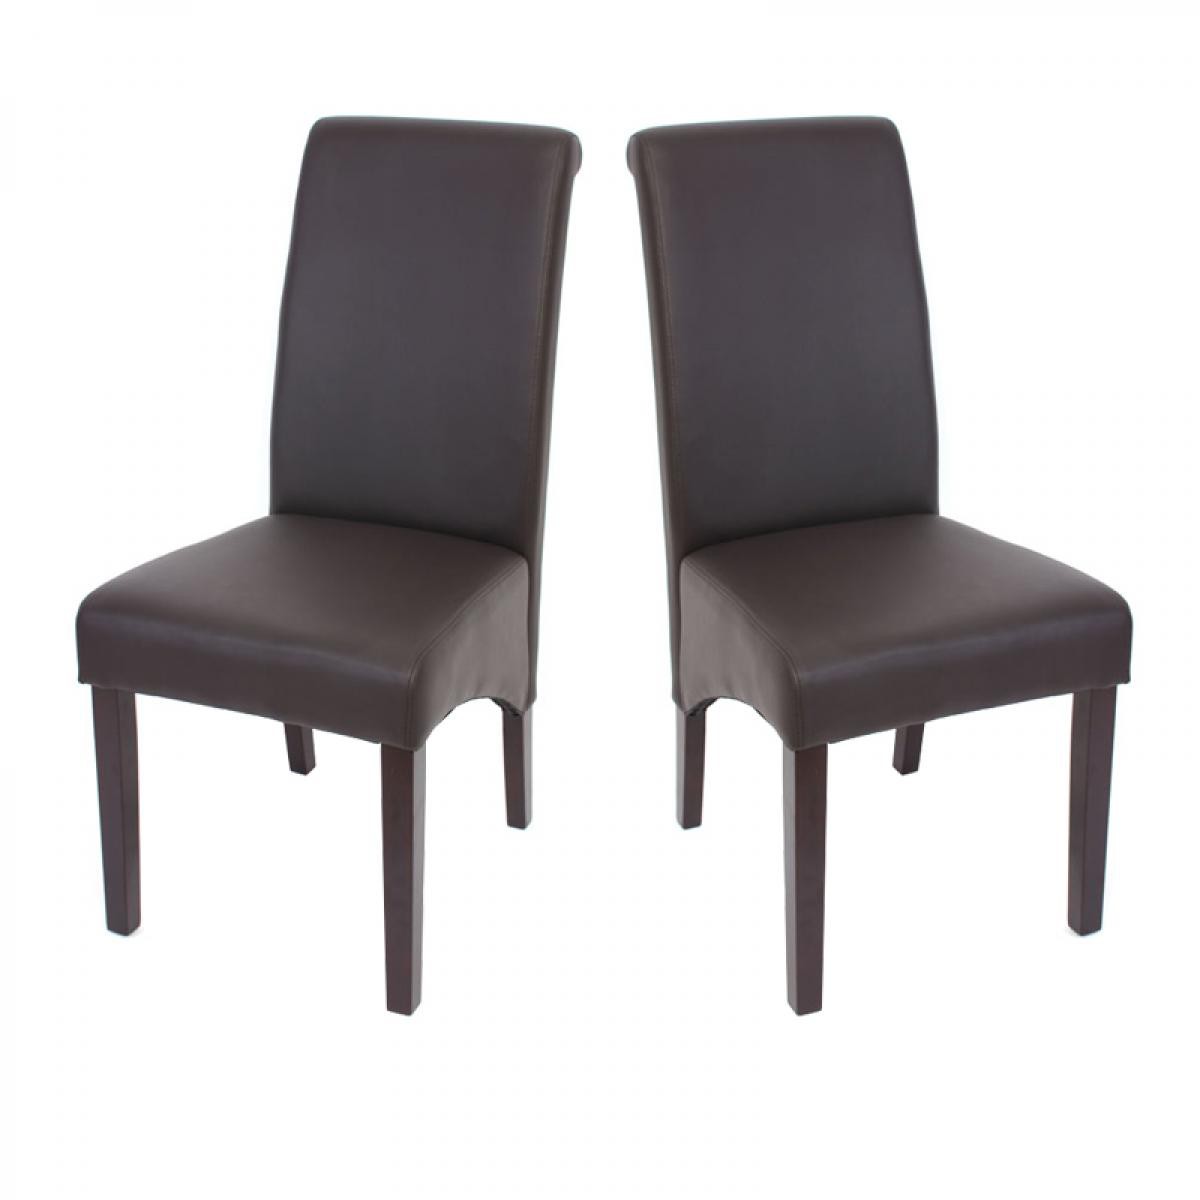 Mendler - 2x chaise de séjour M37, simili-cuir mat, marron/pieds foncés - Chaises